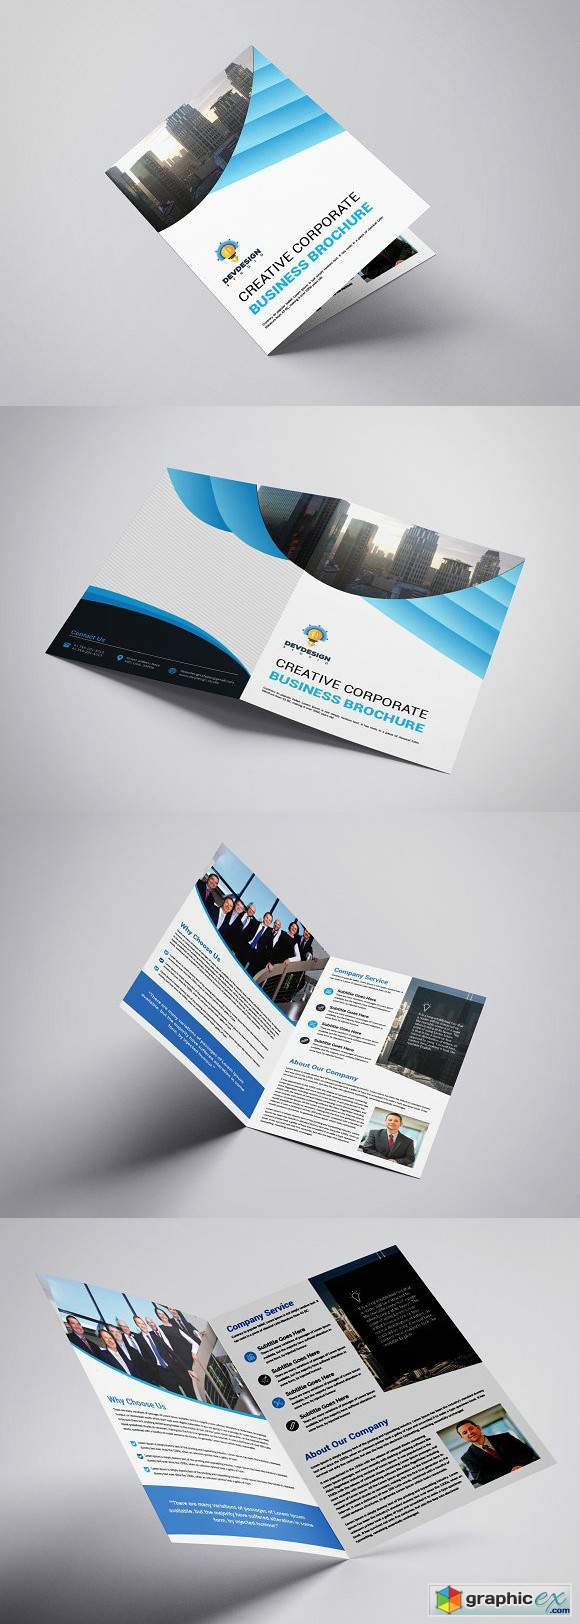 Creative Corporate Brochure Design